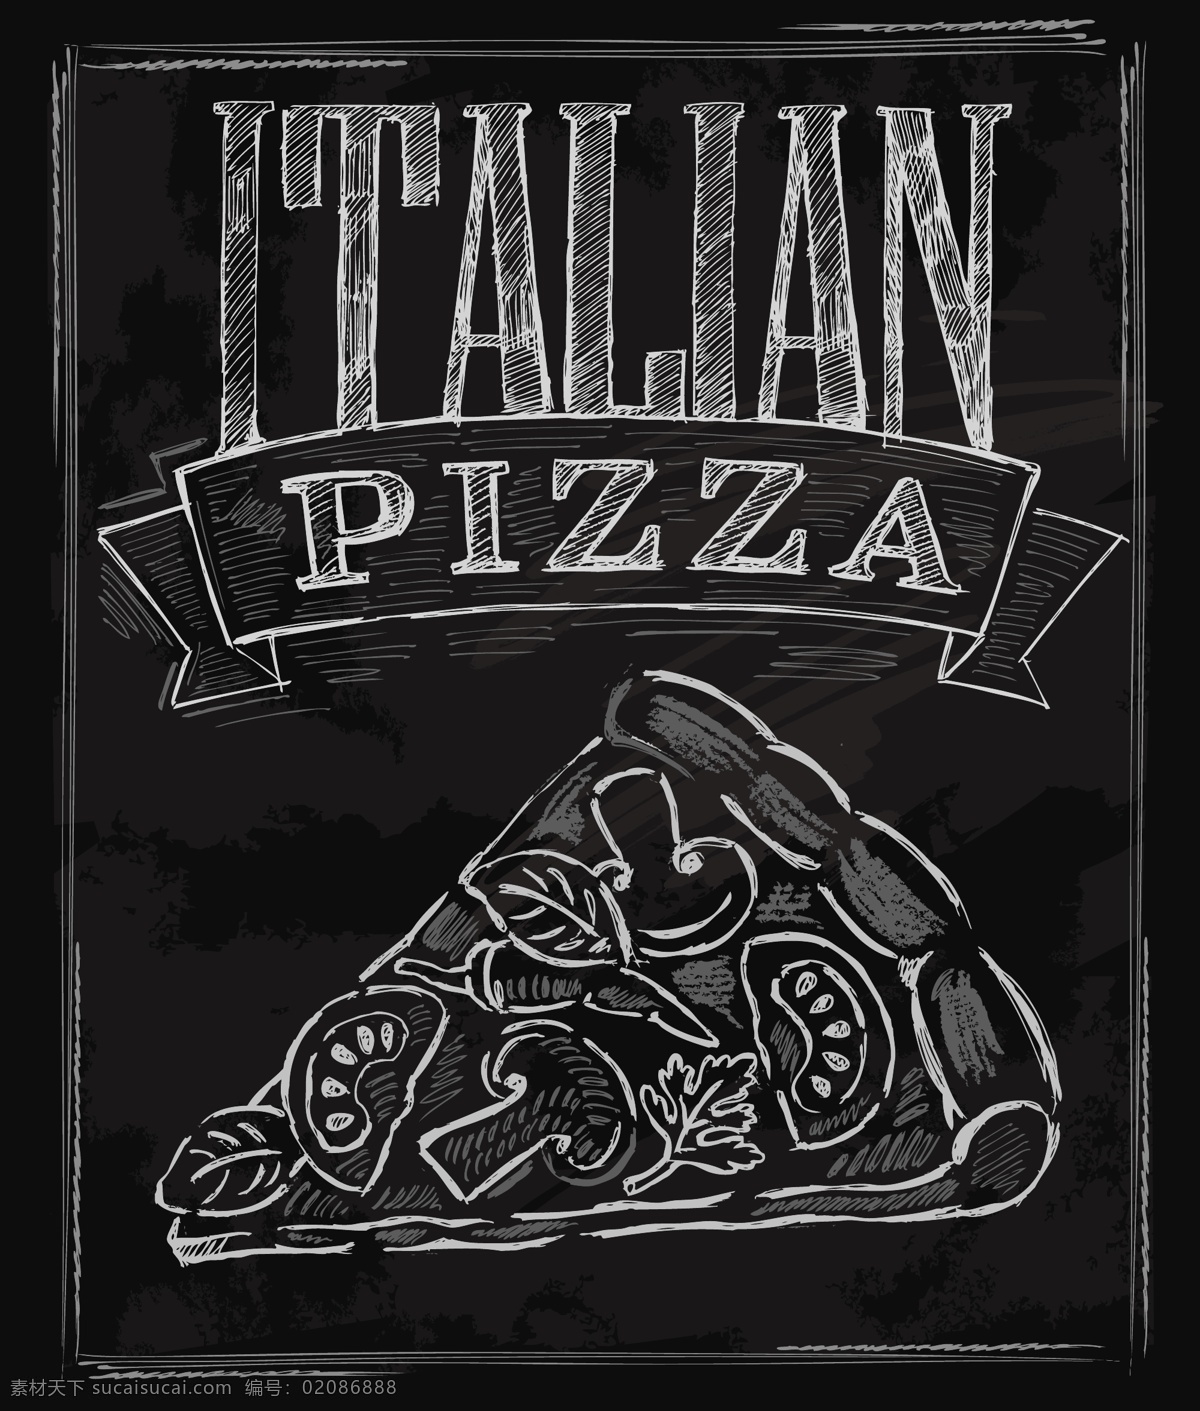 西餐厅 黑板 背景 粉笔 字画 菜单 矢量 披萨 黑色 简约 卡通 设计素材 平面素材